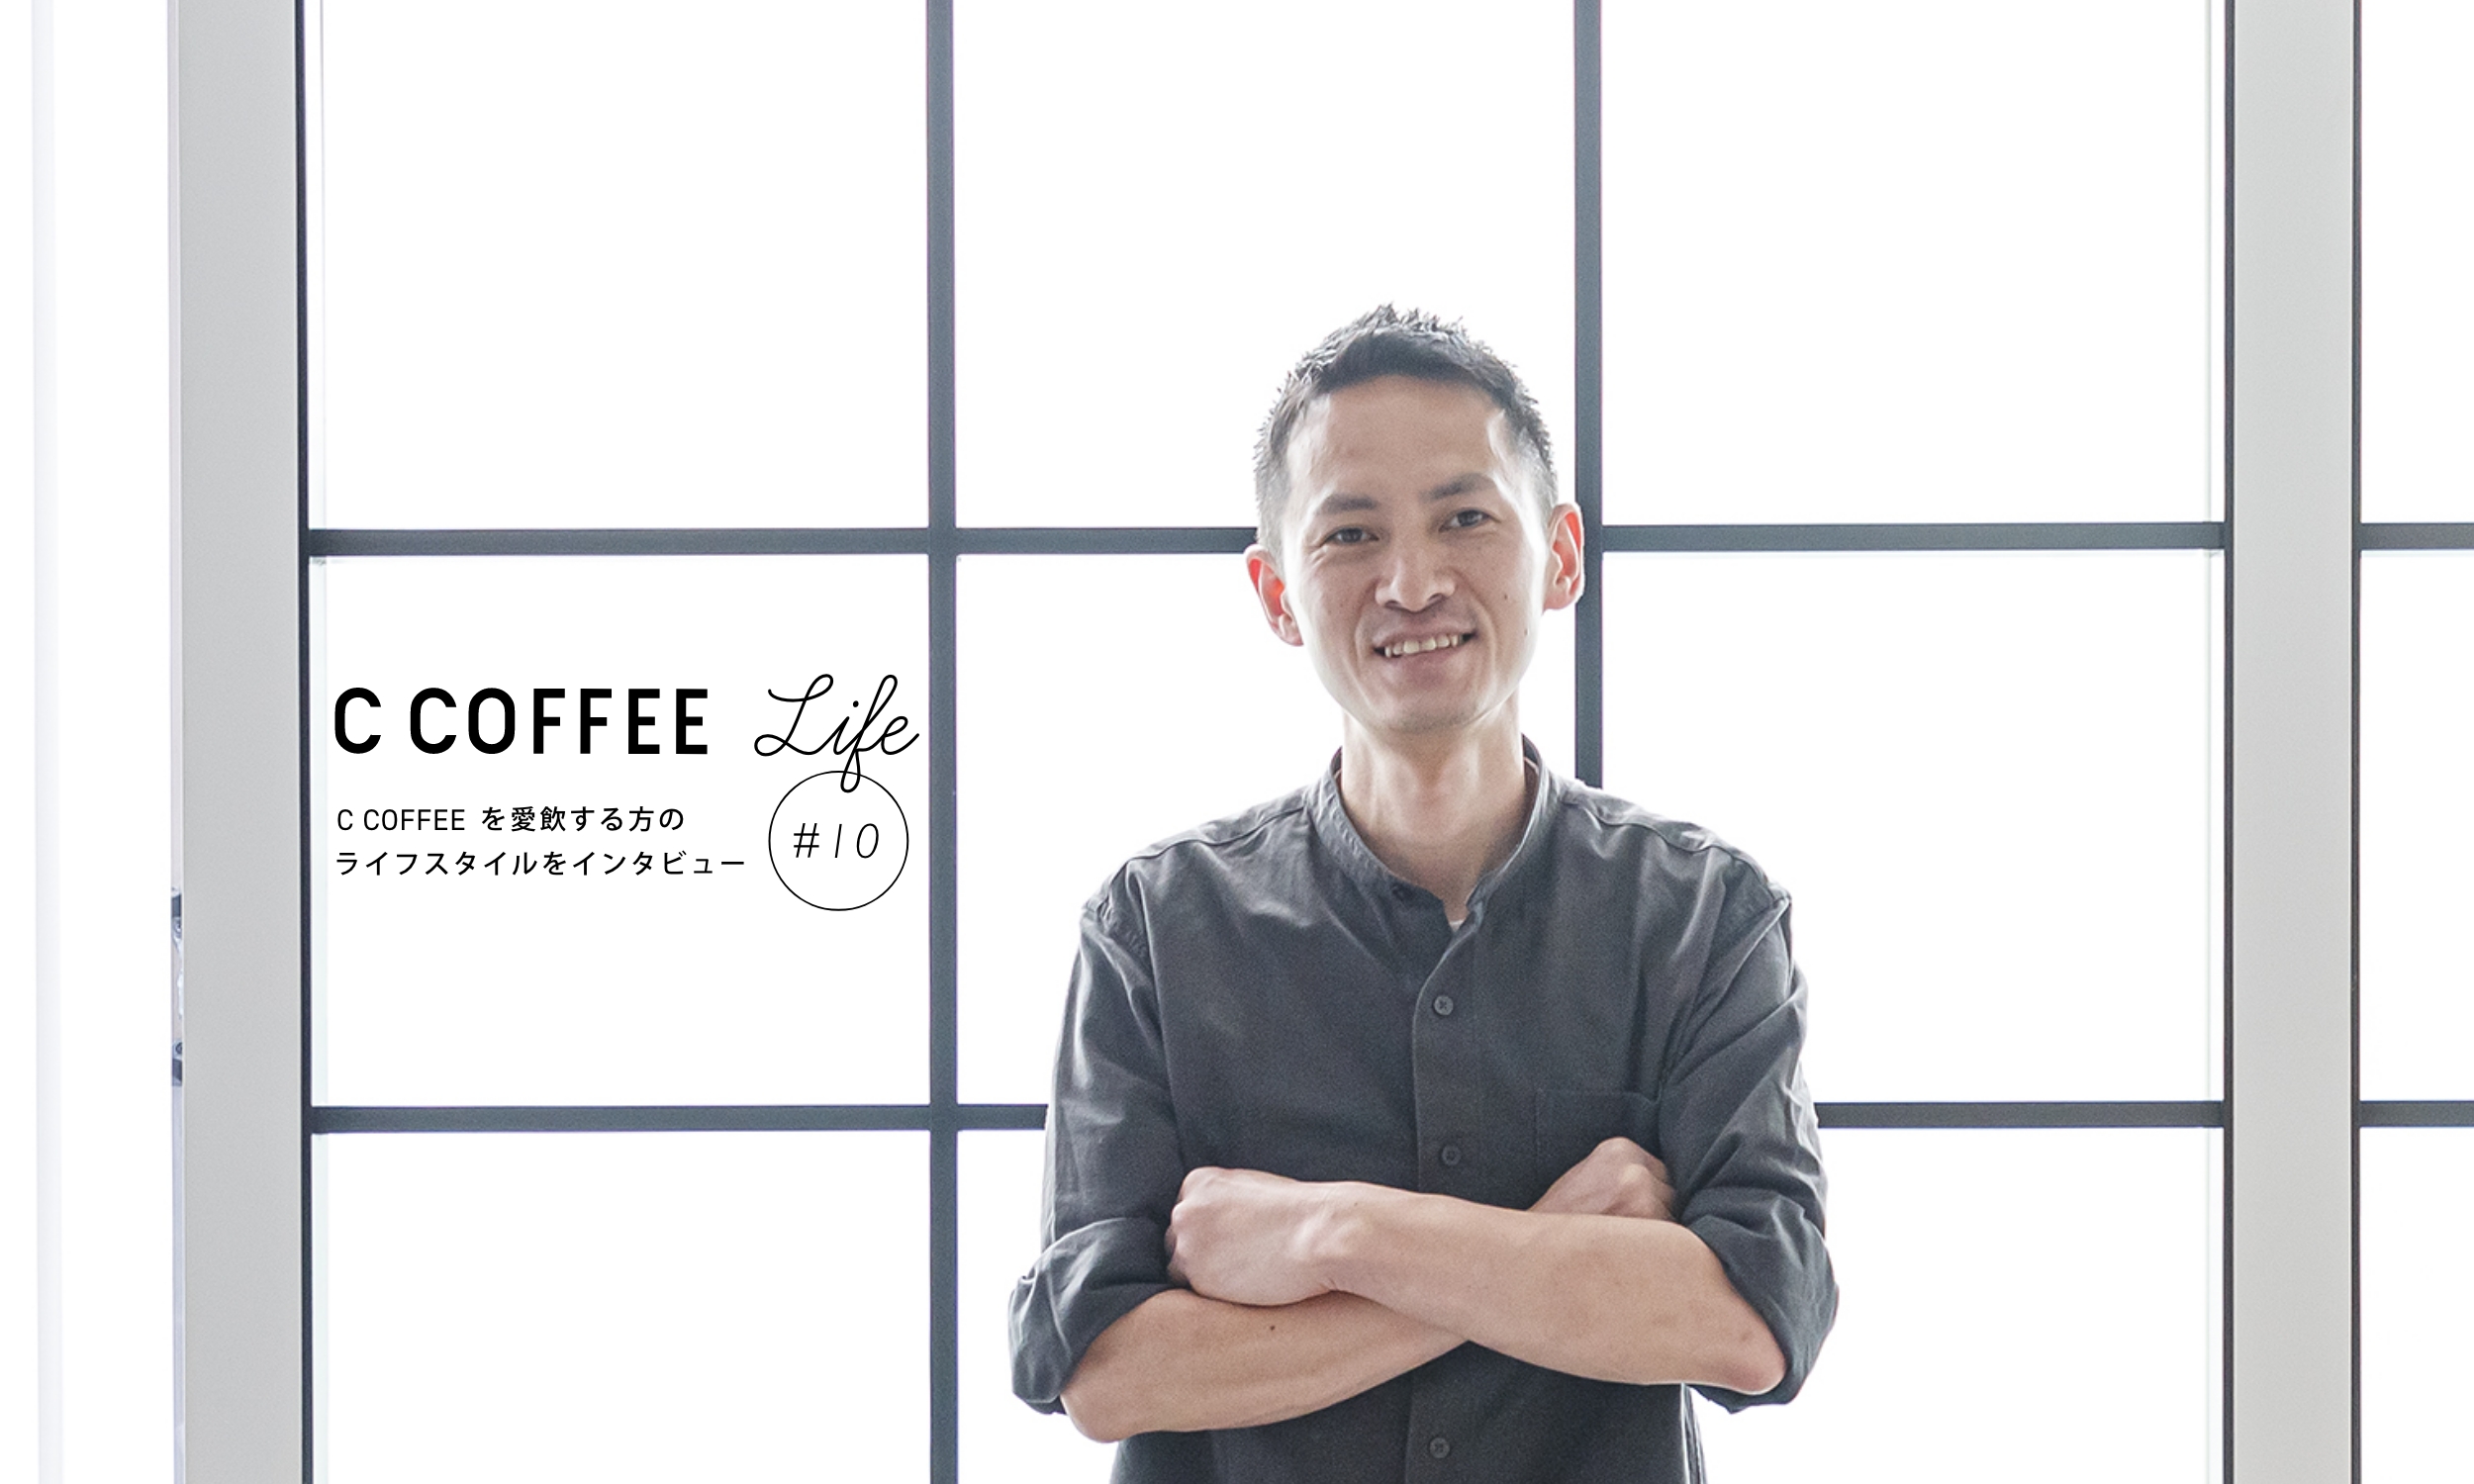 C COFFEE Life #10 イタリアンビストロ オーナーシェフ 天野智詞さん